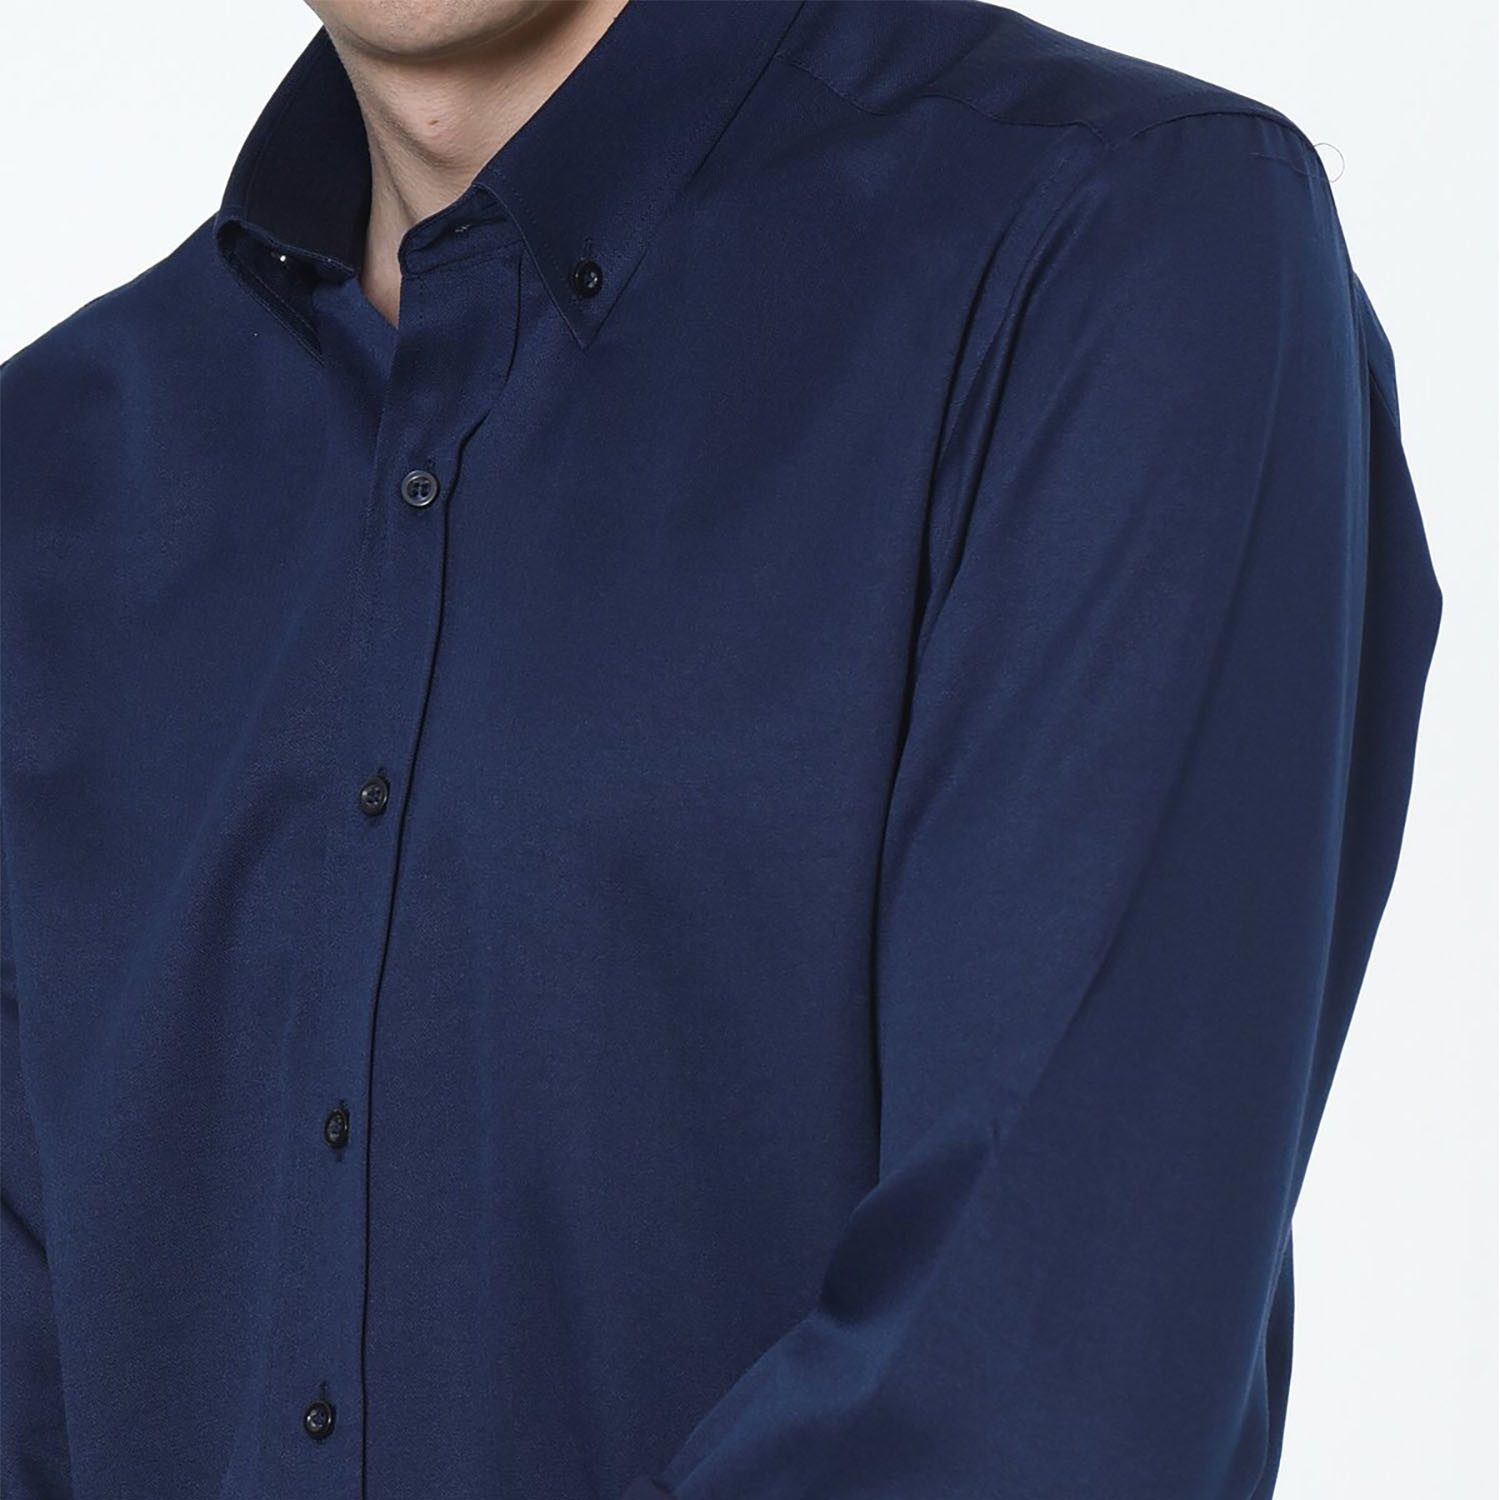 Peter Button Up Shirt // Dark Blue (Small) - Dewberry - Touch of Modern